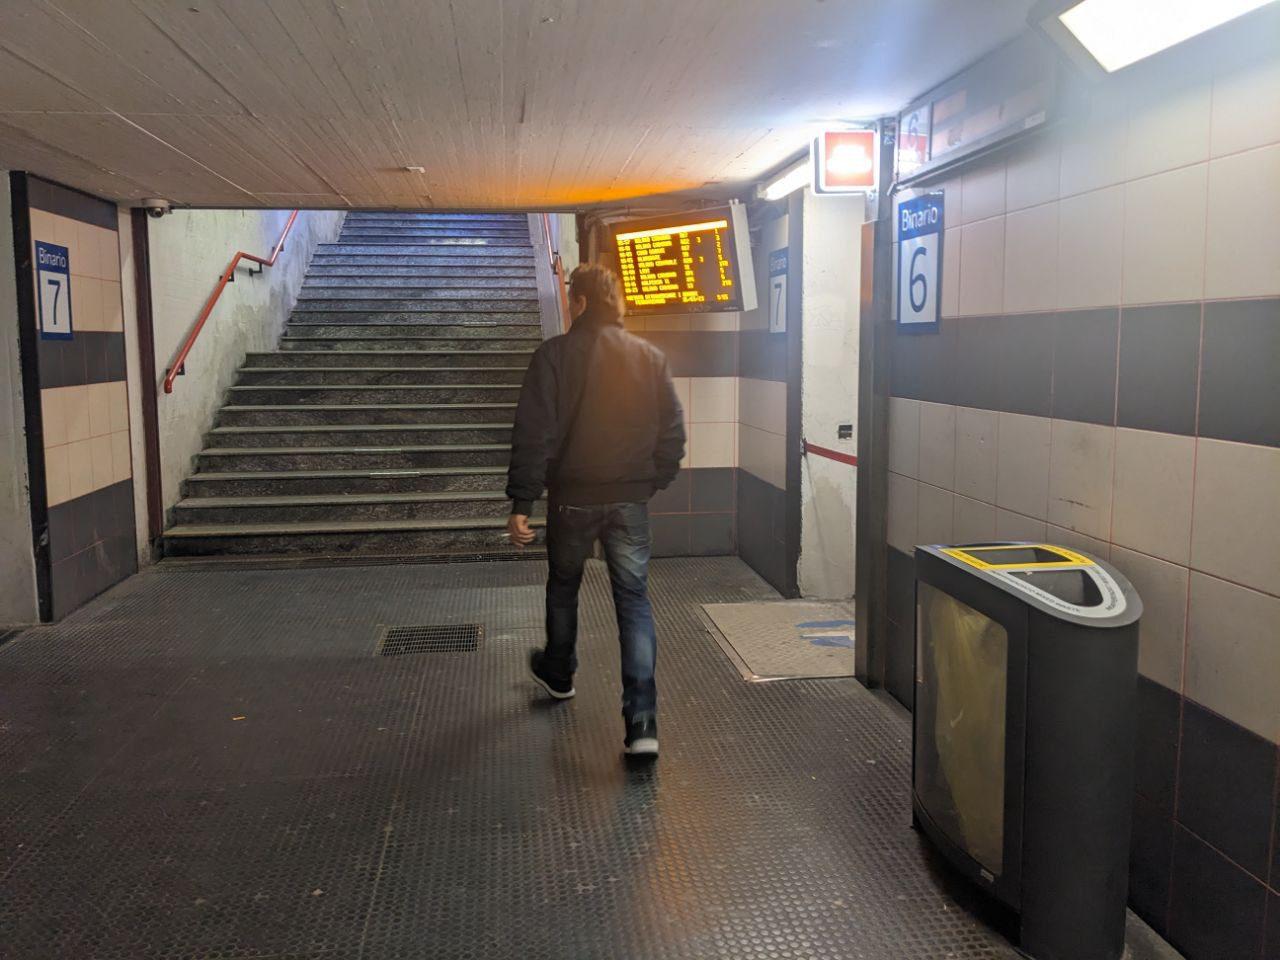 Saronno, borseggio sulle scale mobili in stazione: via portafoglio dallo zainetto